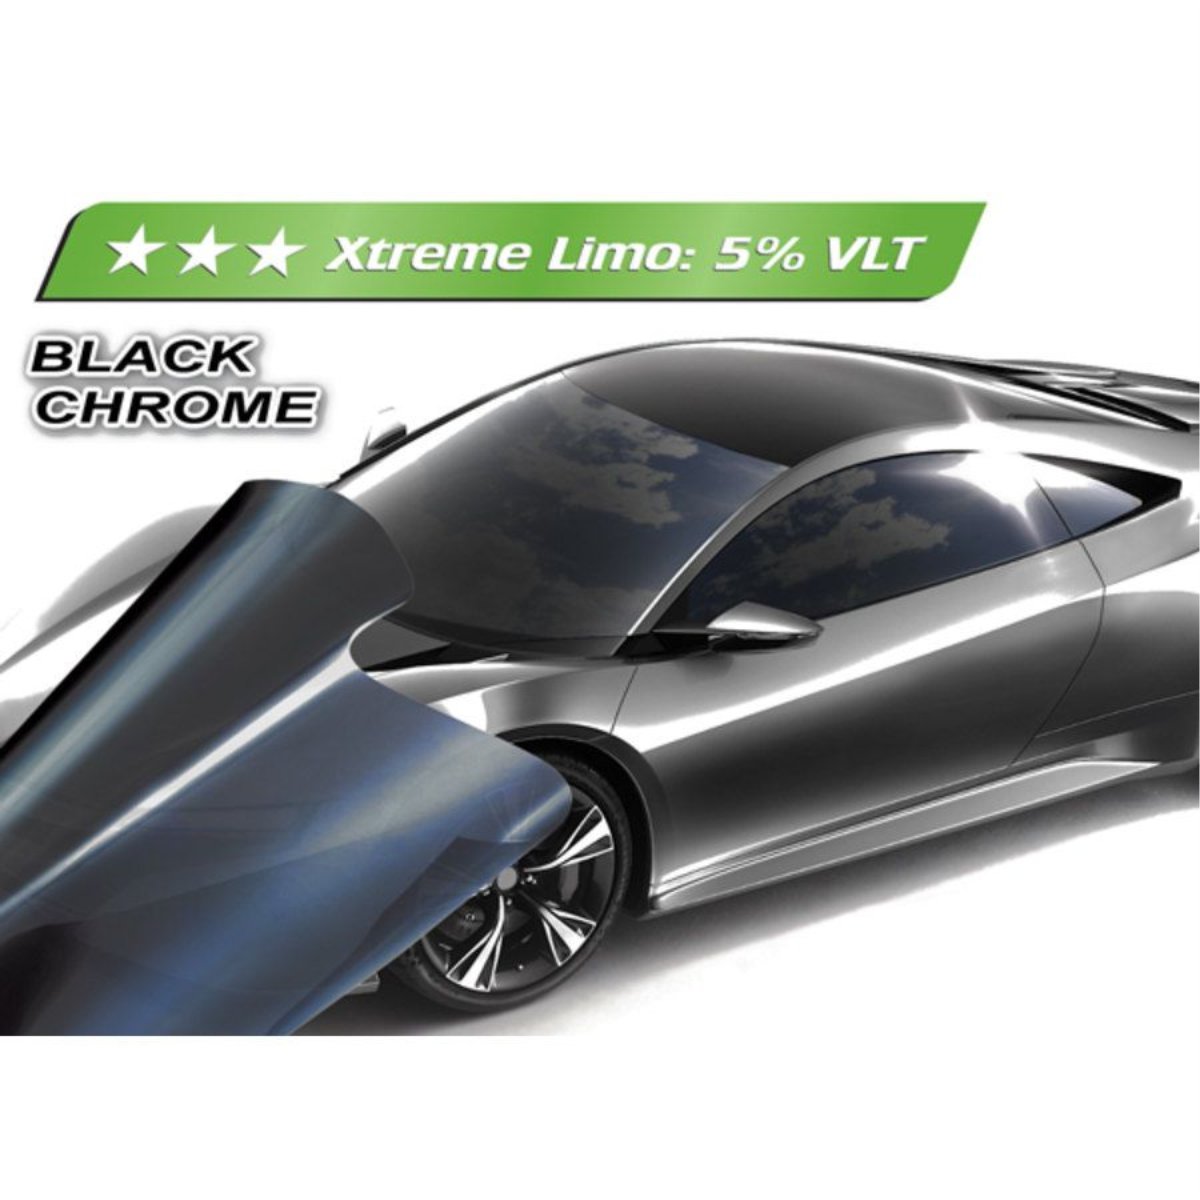 Pellicola Oscurante Vetri Auto 300x76 Extreme Limo 5% Black Chrome vlt NEXUS